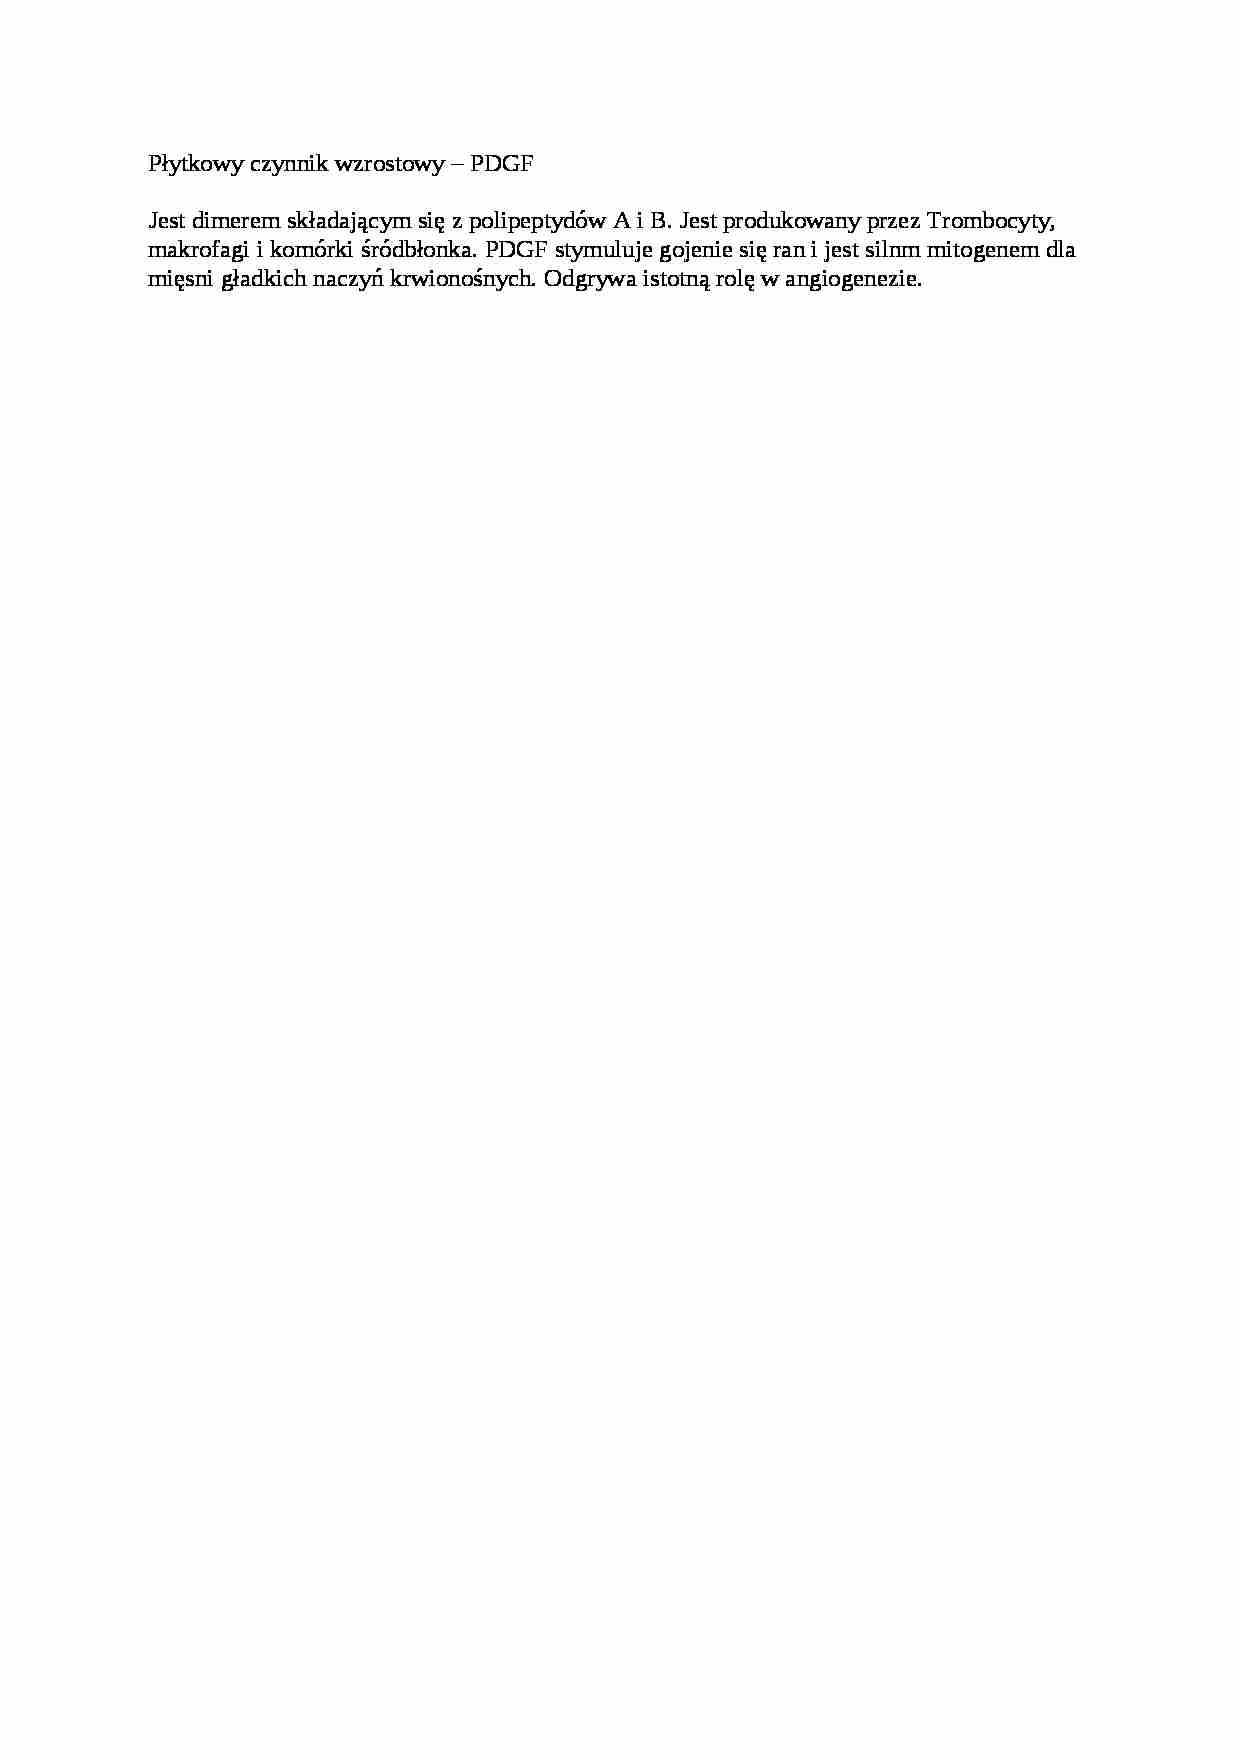 Płytkowy czynnik wzrostowy PDGF - opracowanie - strona 1